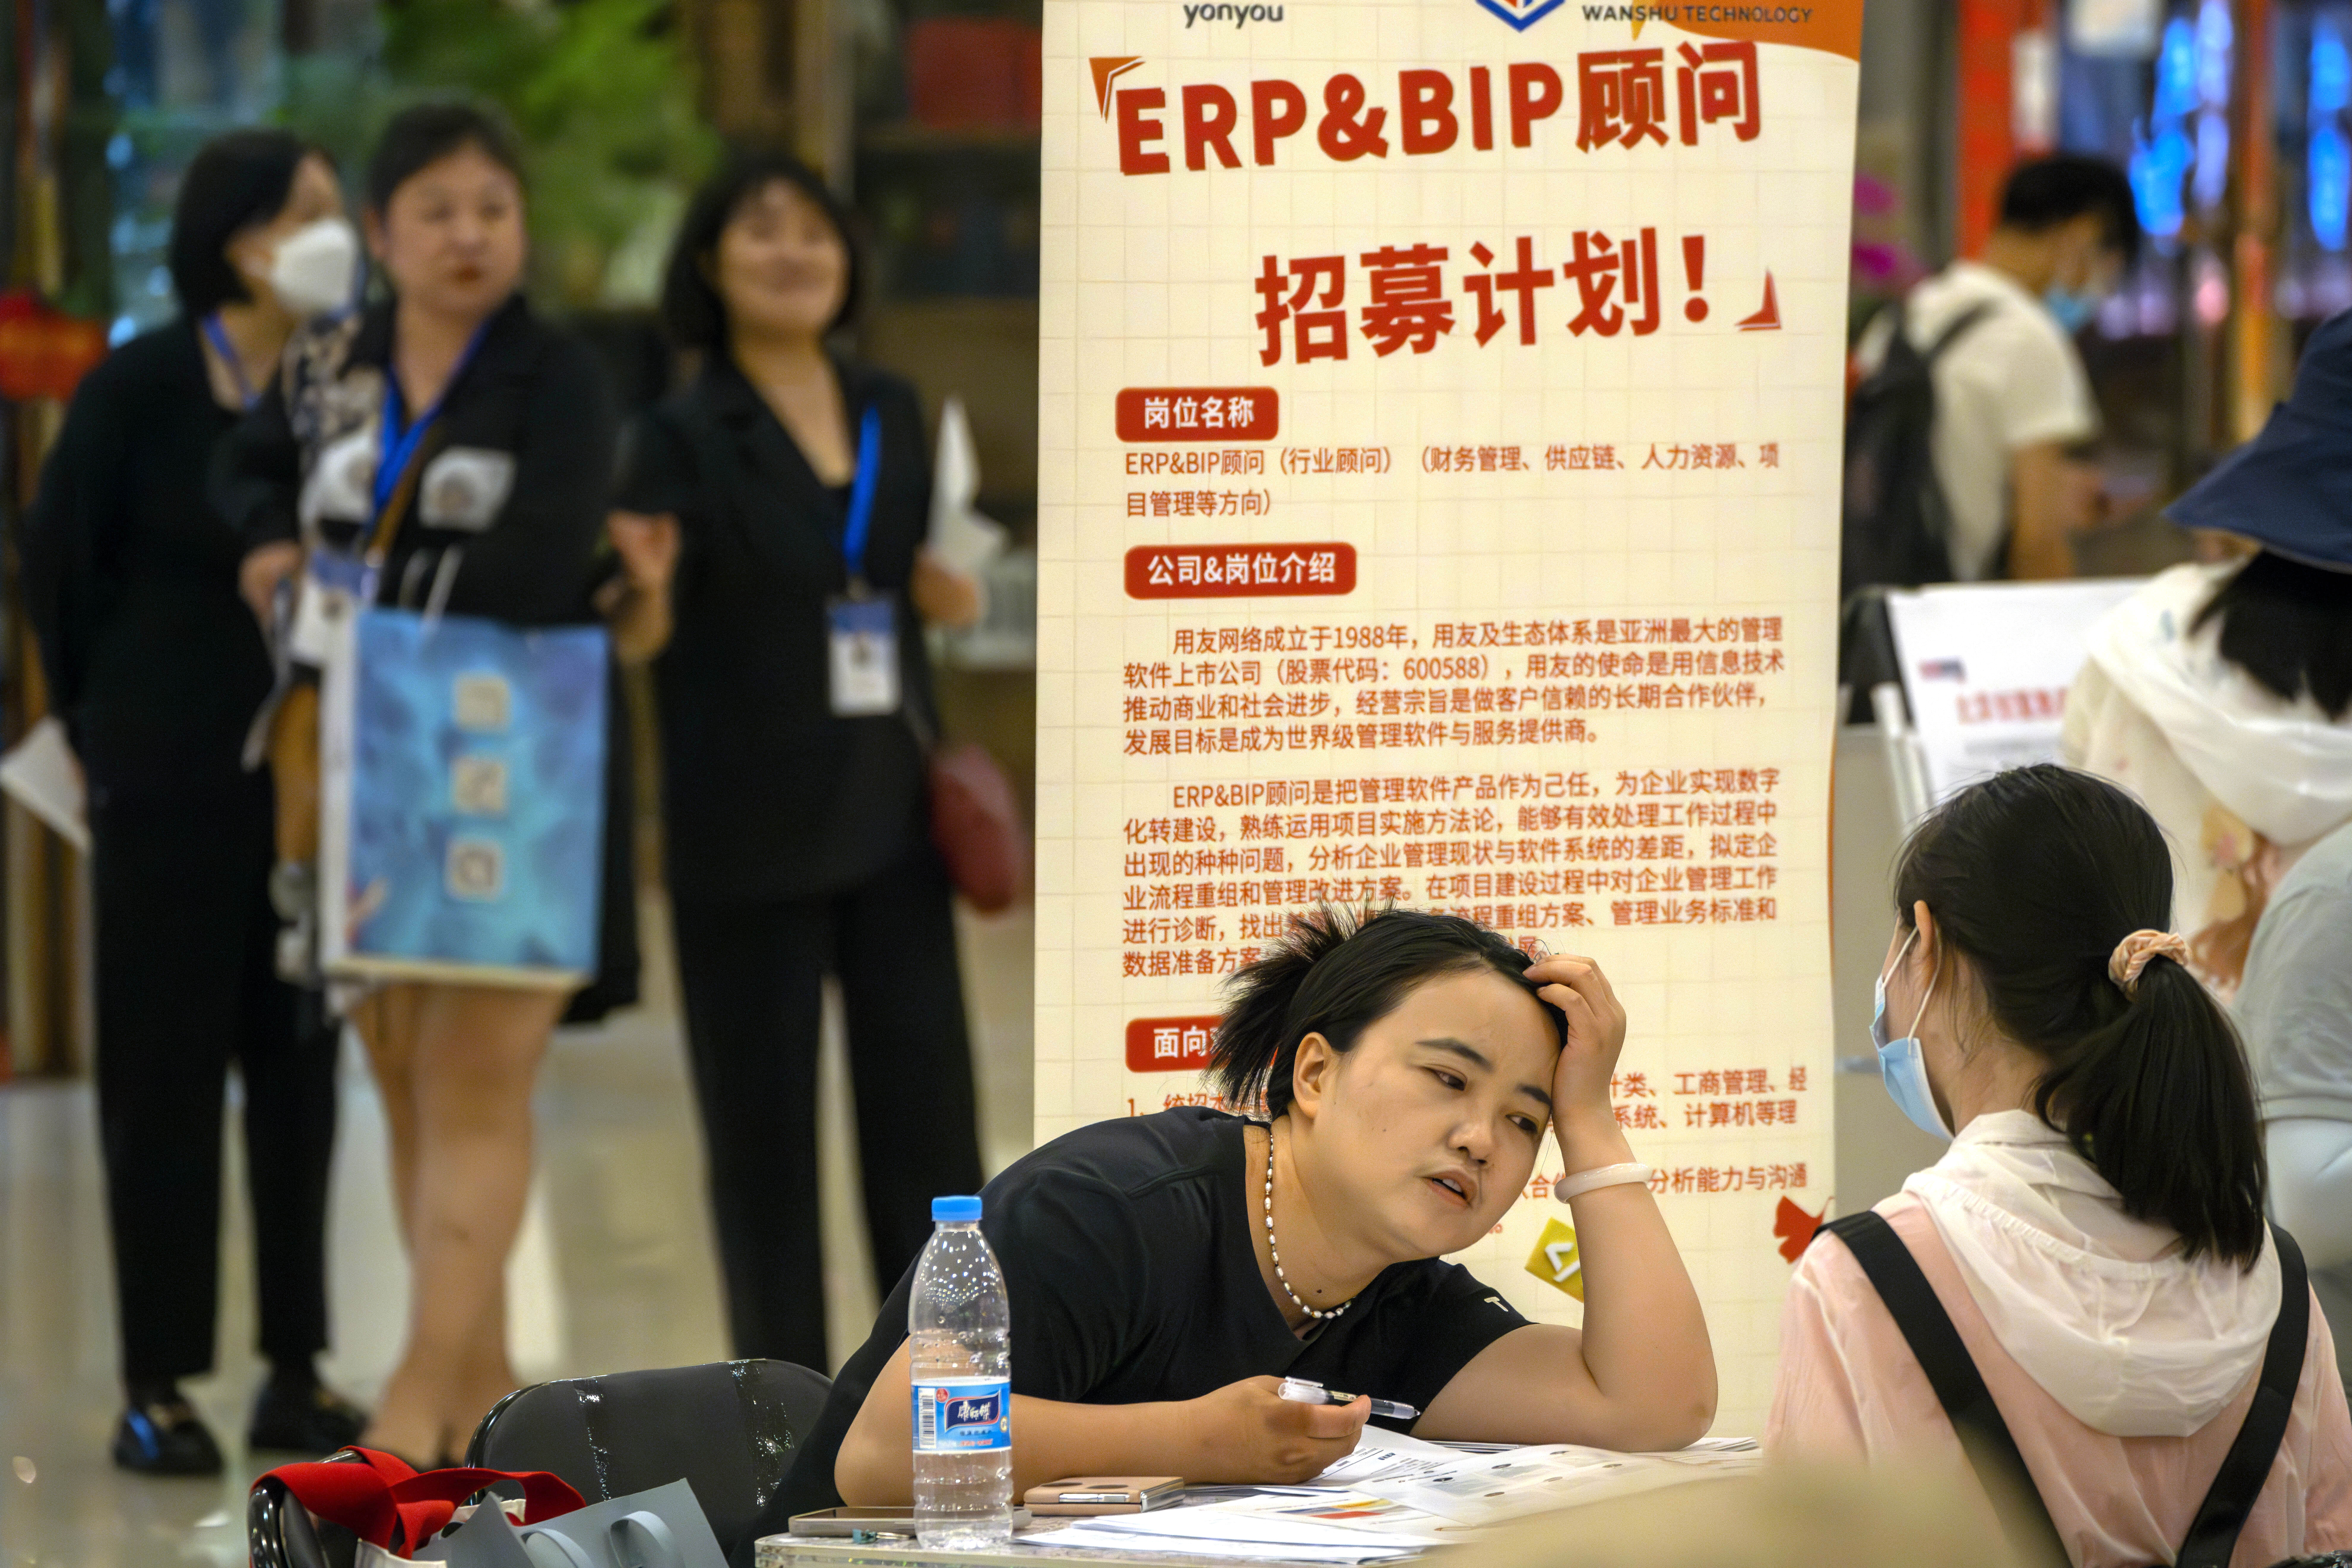 지난 6월 중국 베이징에서 열린 취업박람회 모습. 최근 중국 청년 실업률이 20%를 넘어서자, 중국 당국은 취업률 통계 발표를 중단했다.